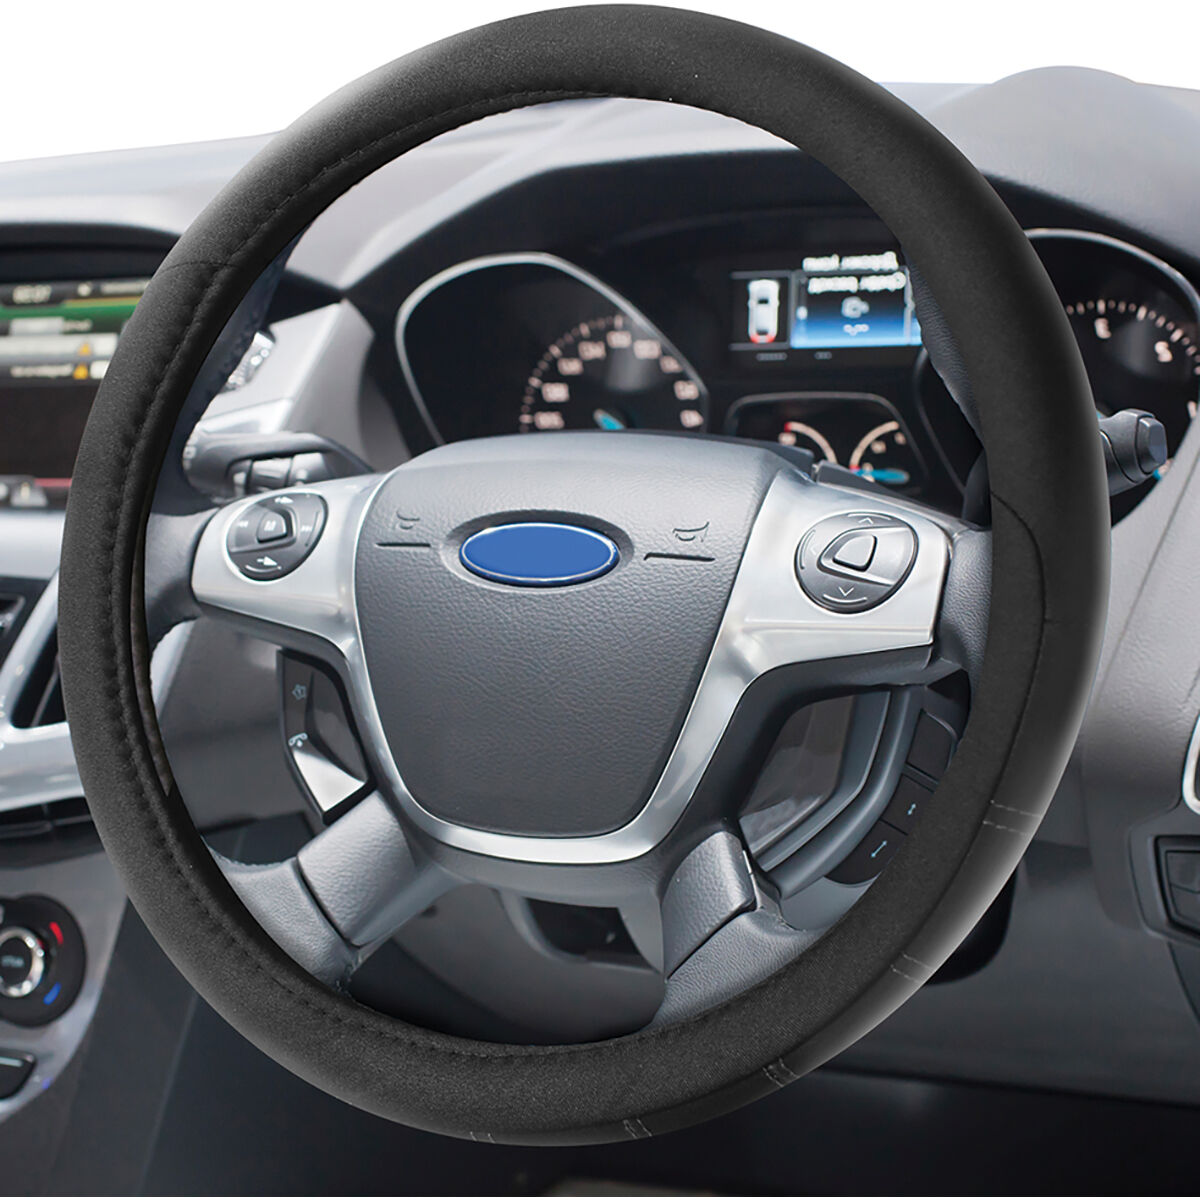 Dickies Polyester OG Logo Steering Wheel Cover Black 380mm Diameter, , scaau_hi-res